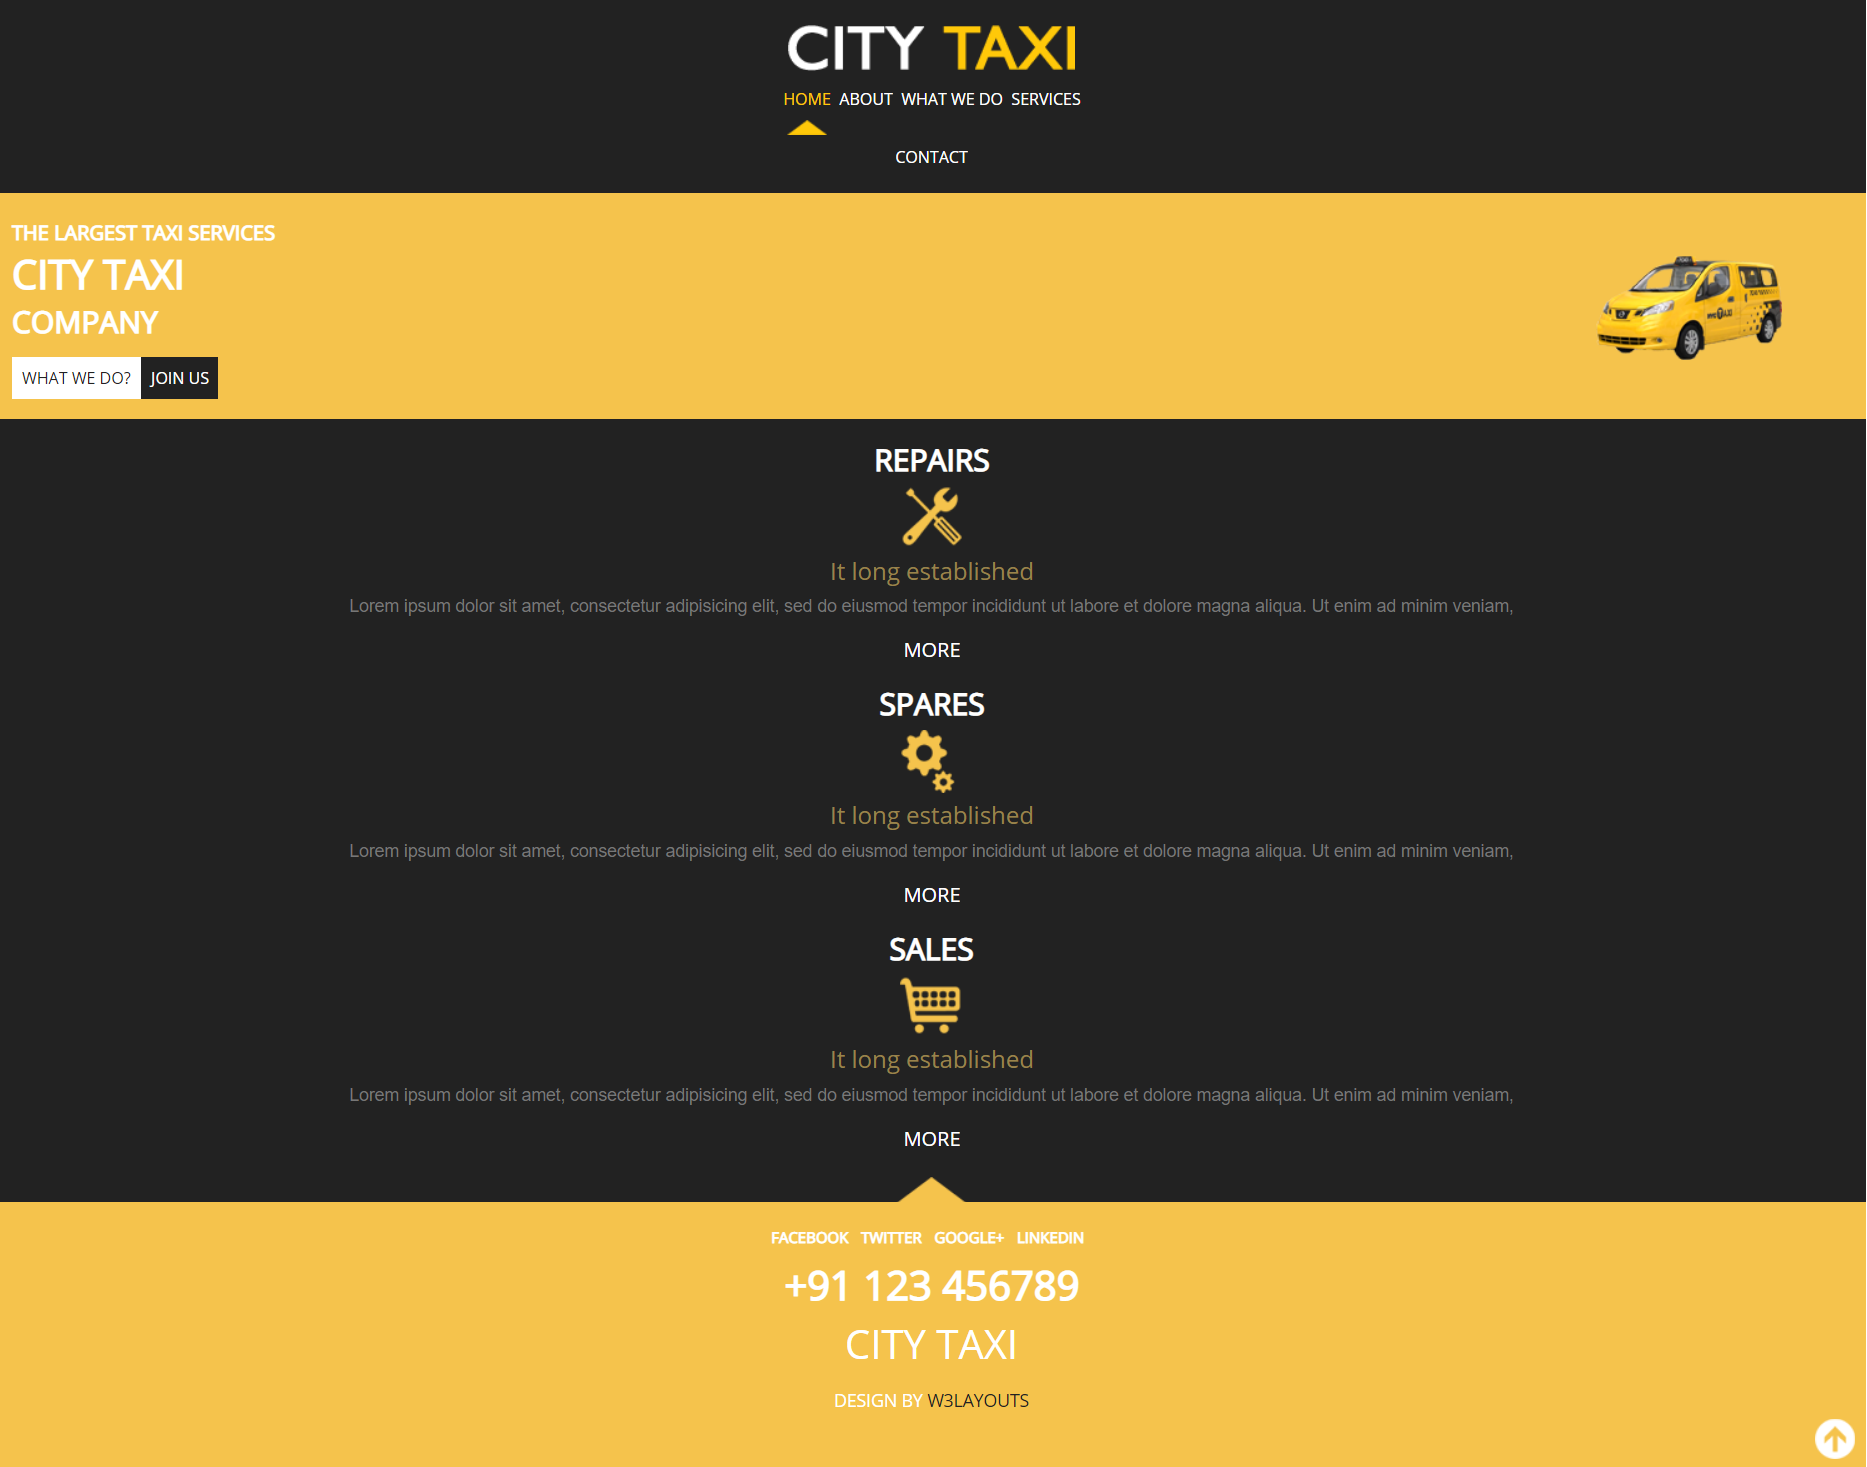 黄色欧美风格响应式城市出租车网页模板